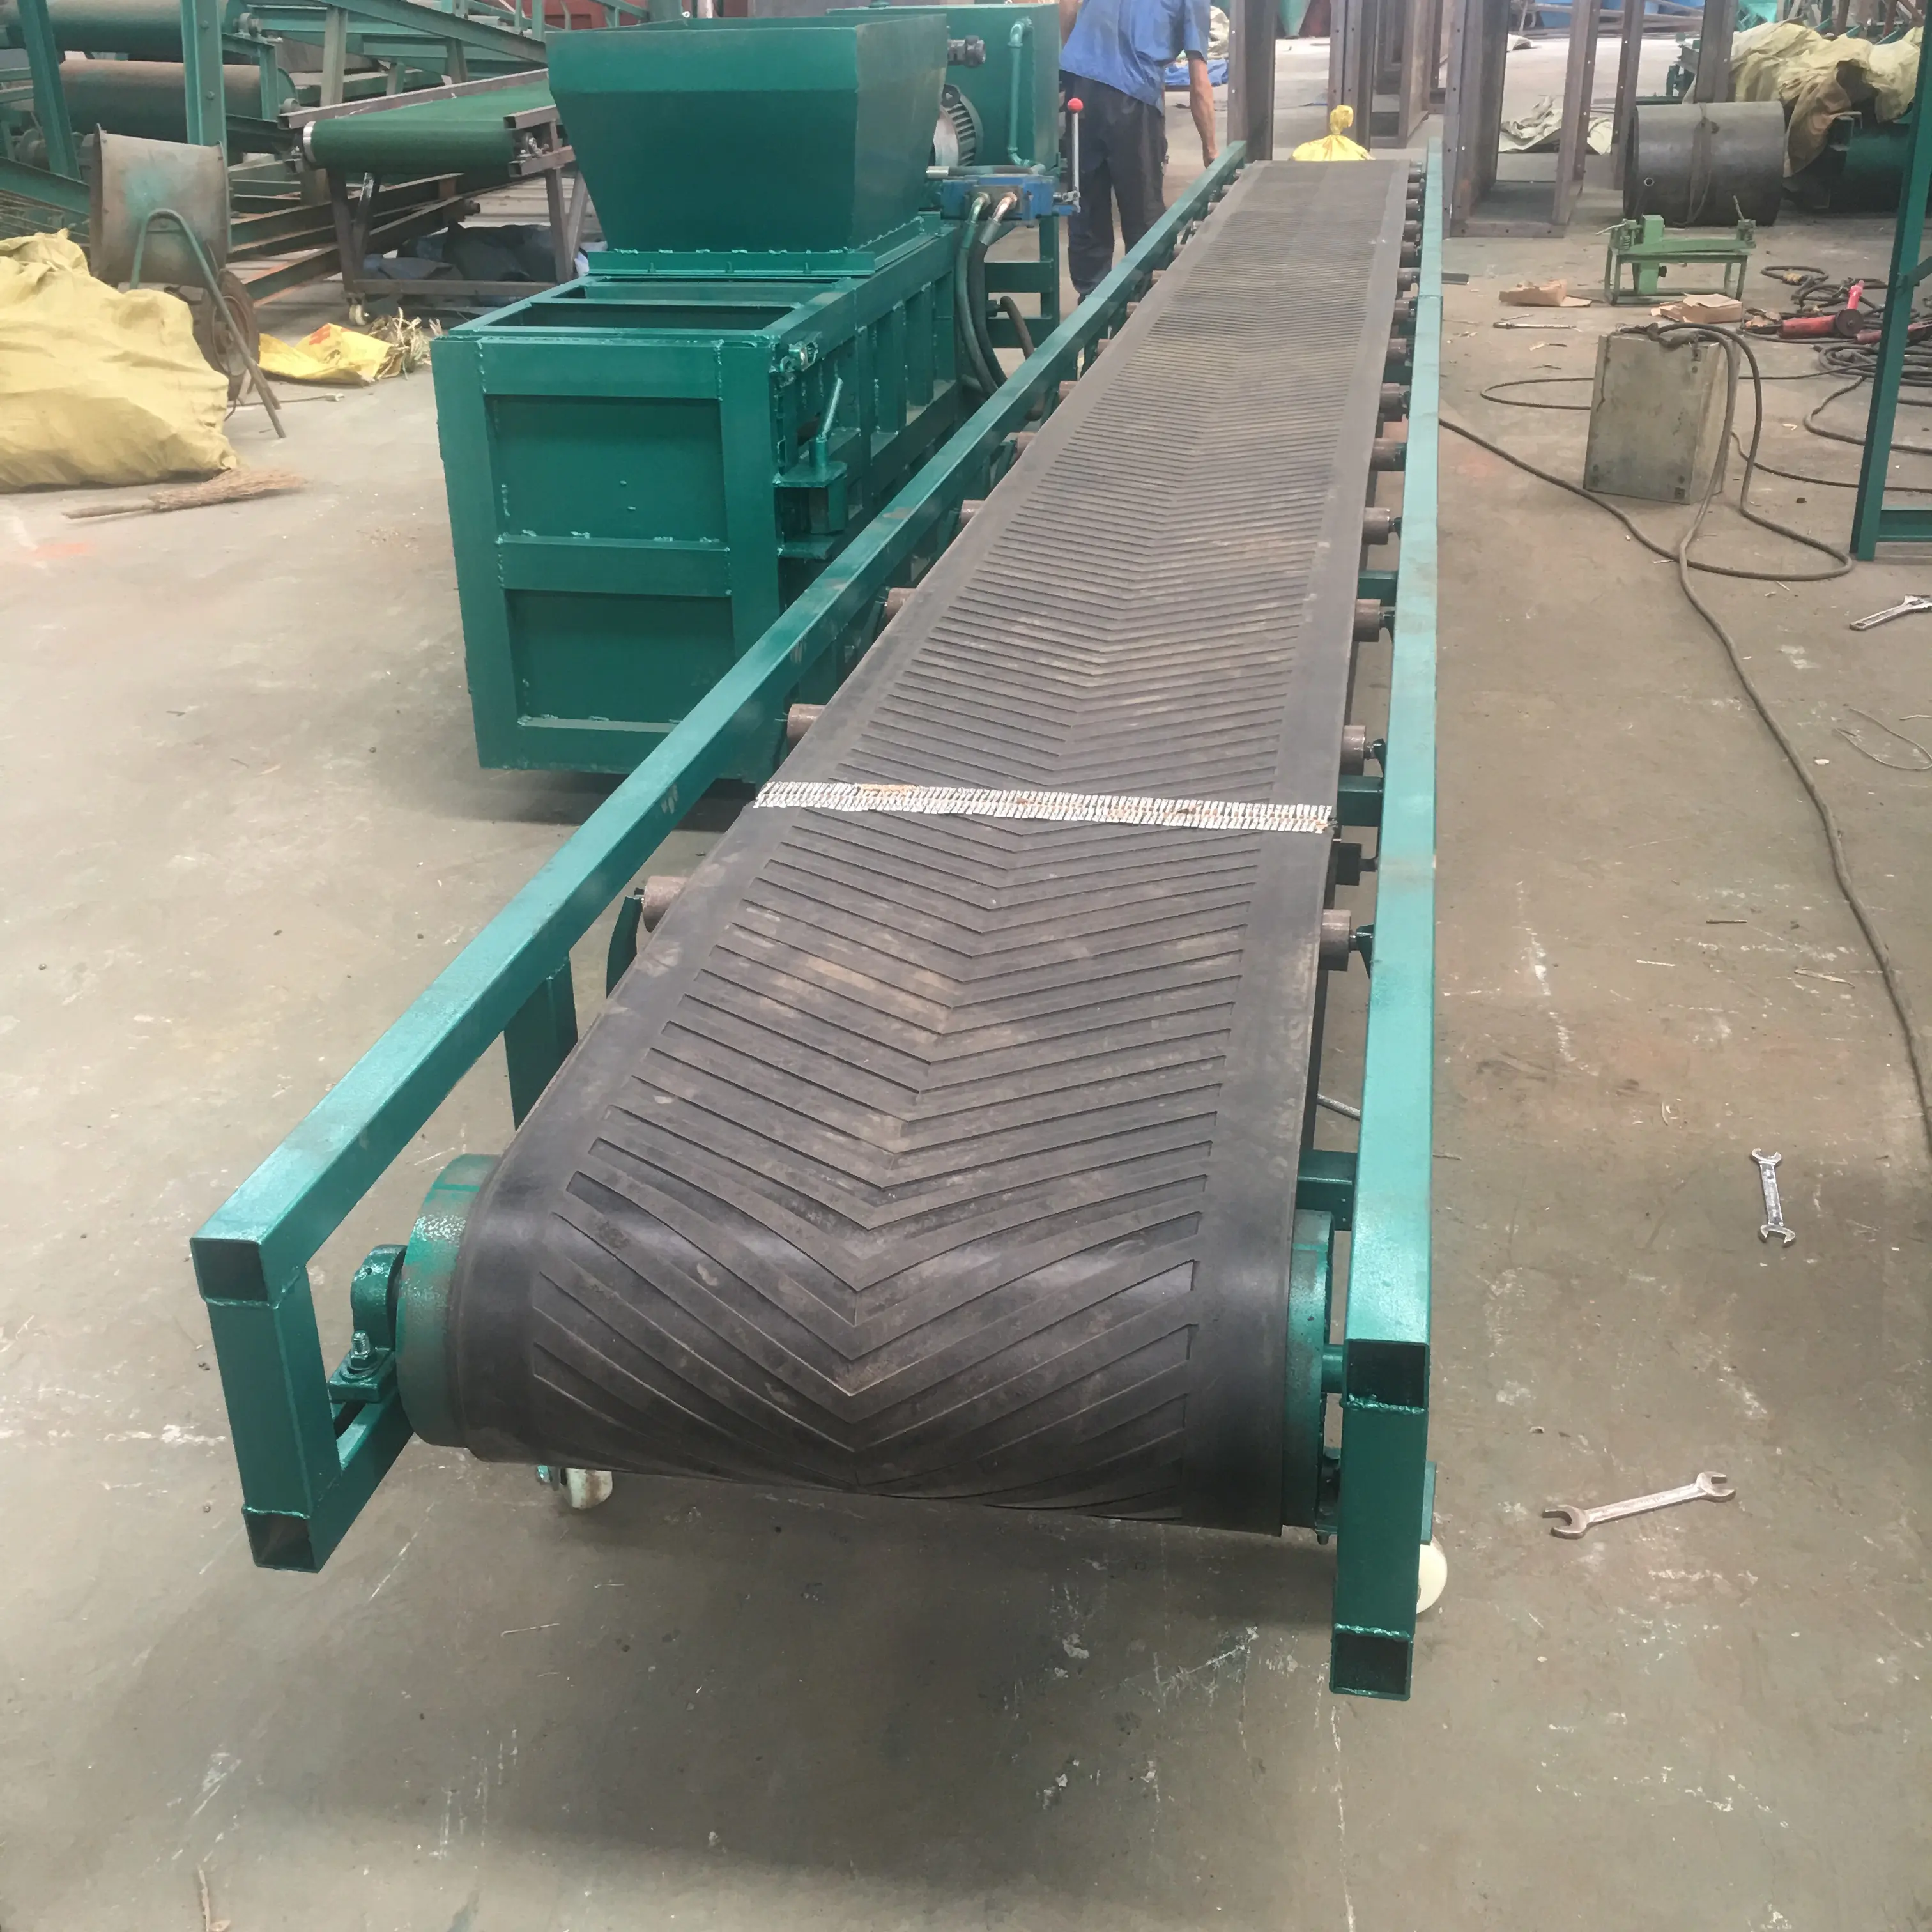 Pellet fertilizer loading belt conveyor Bagged cement loading belt conveyor